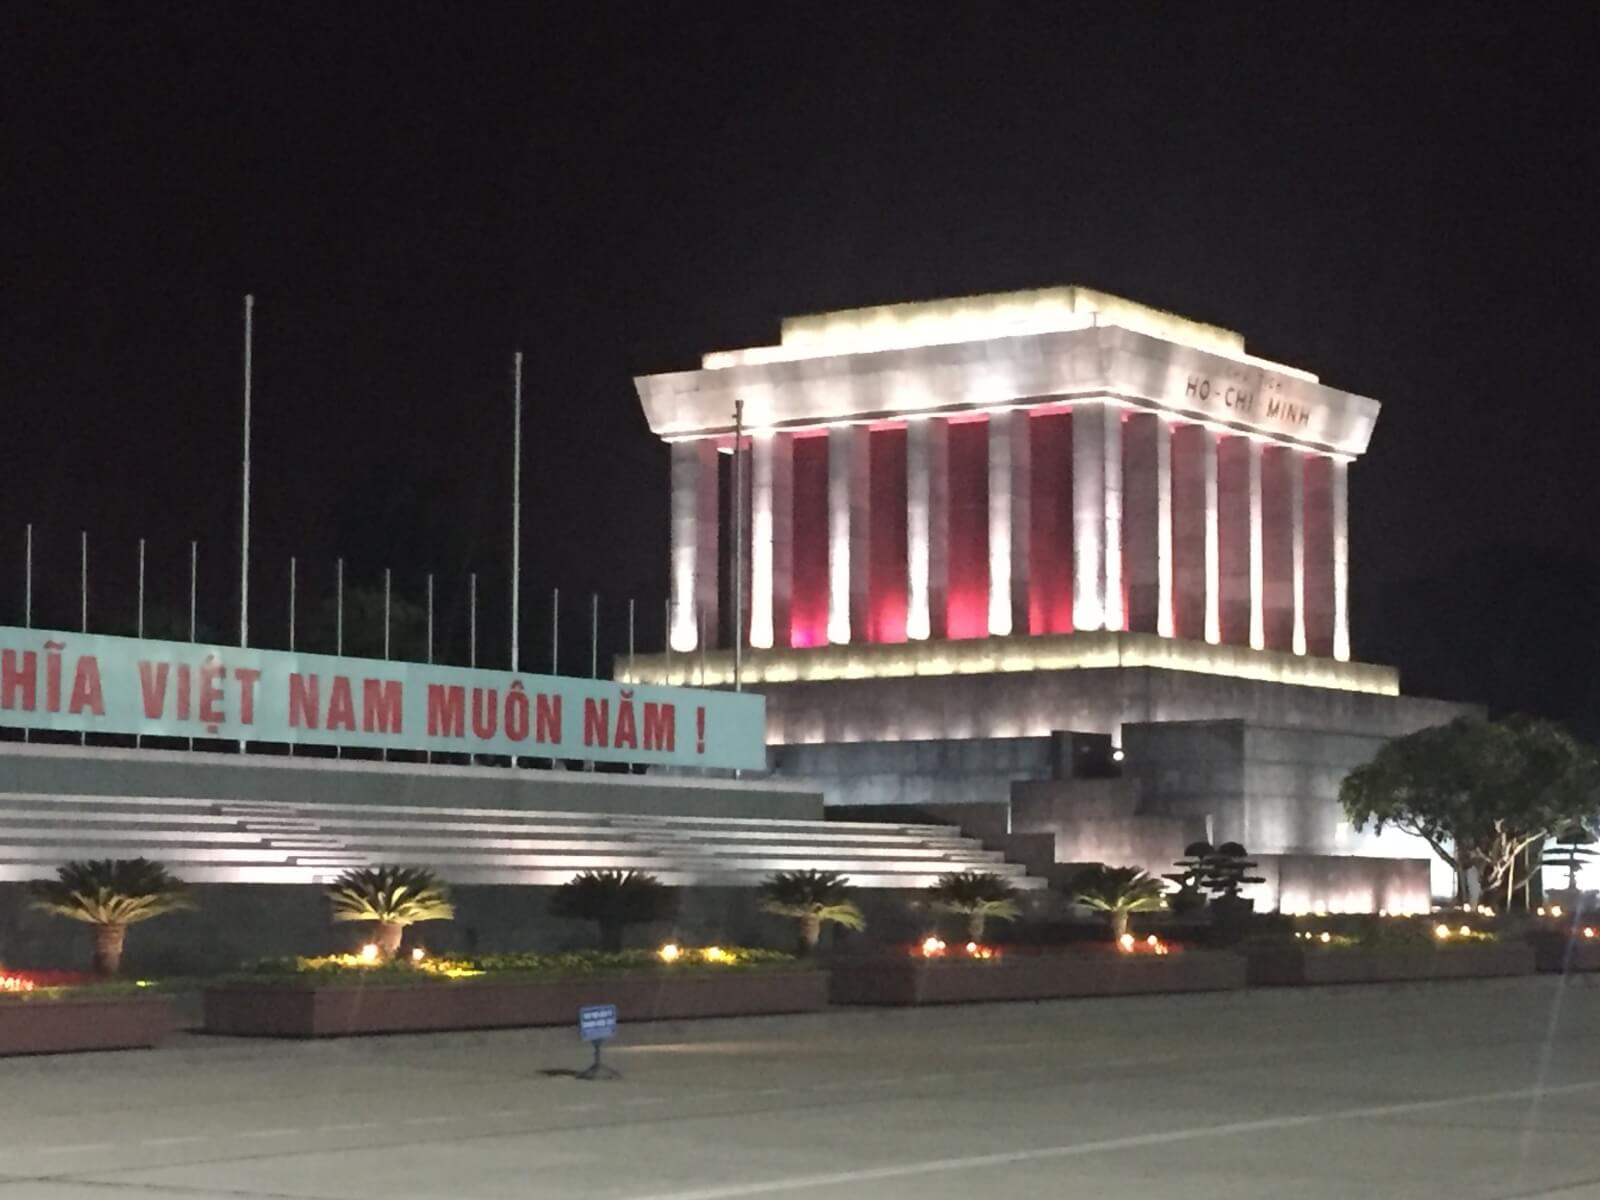 Bild: Mausoleum von Ho Chi Minh